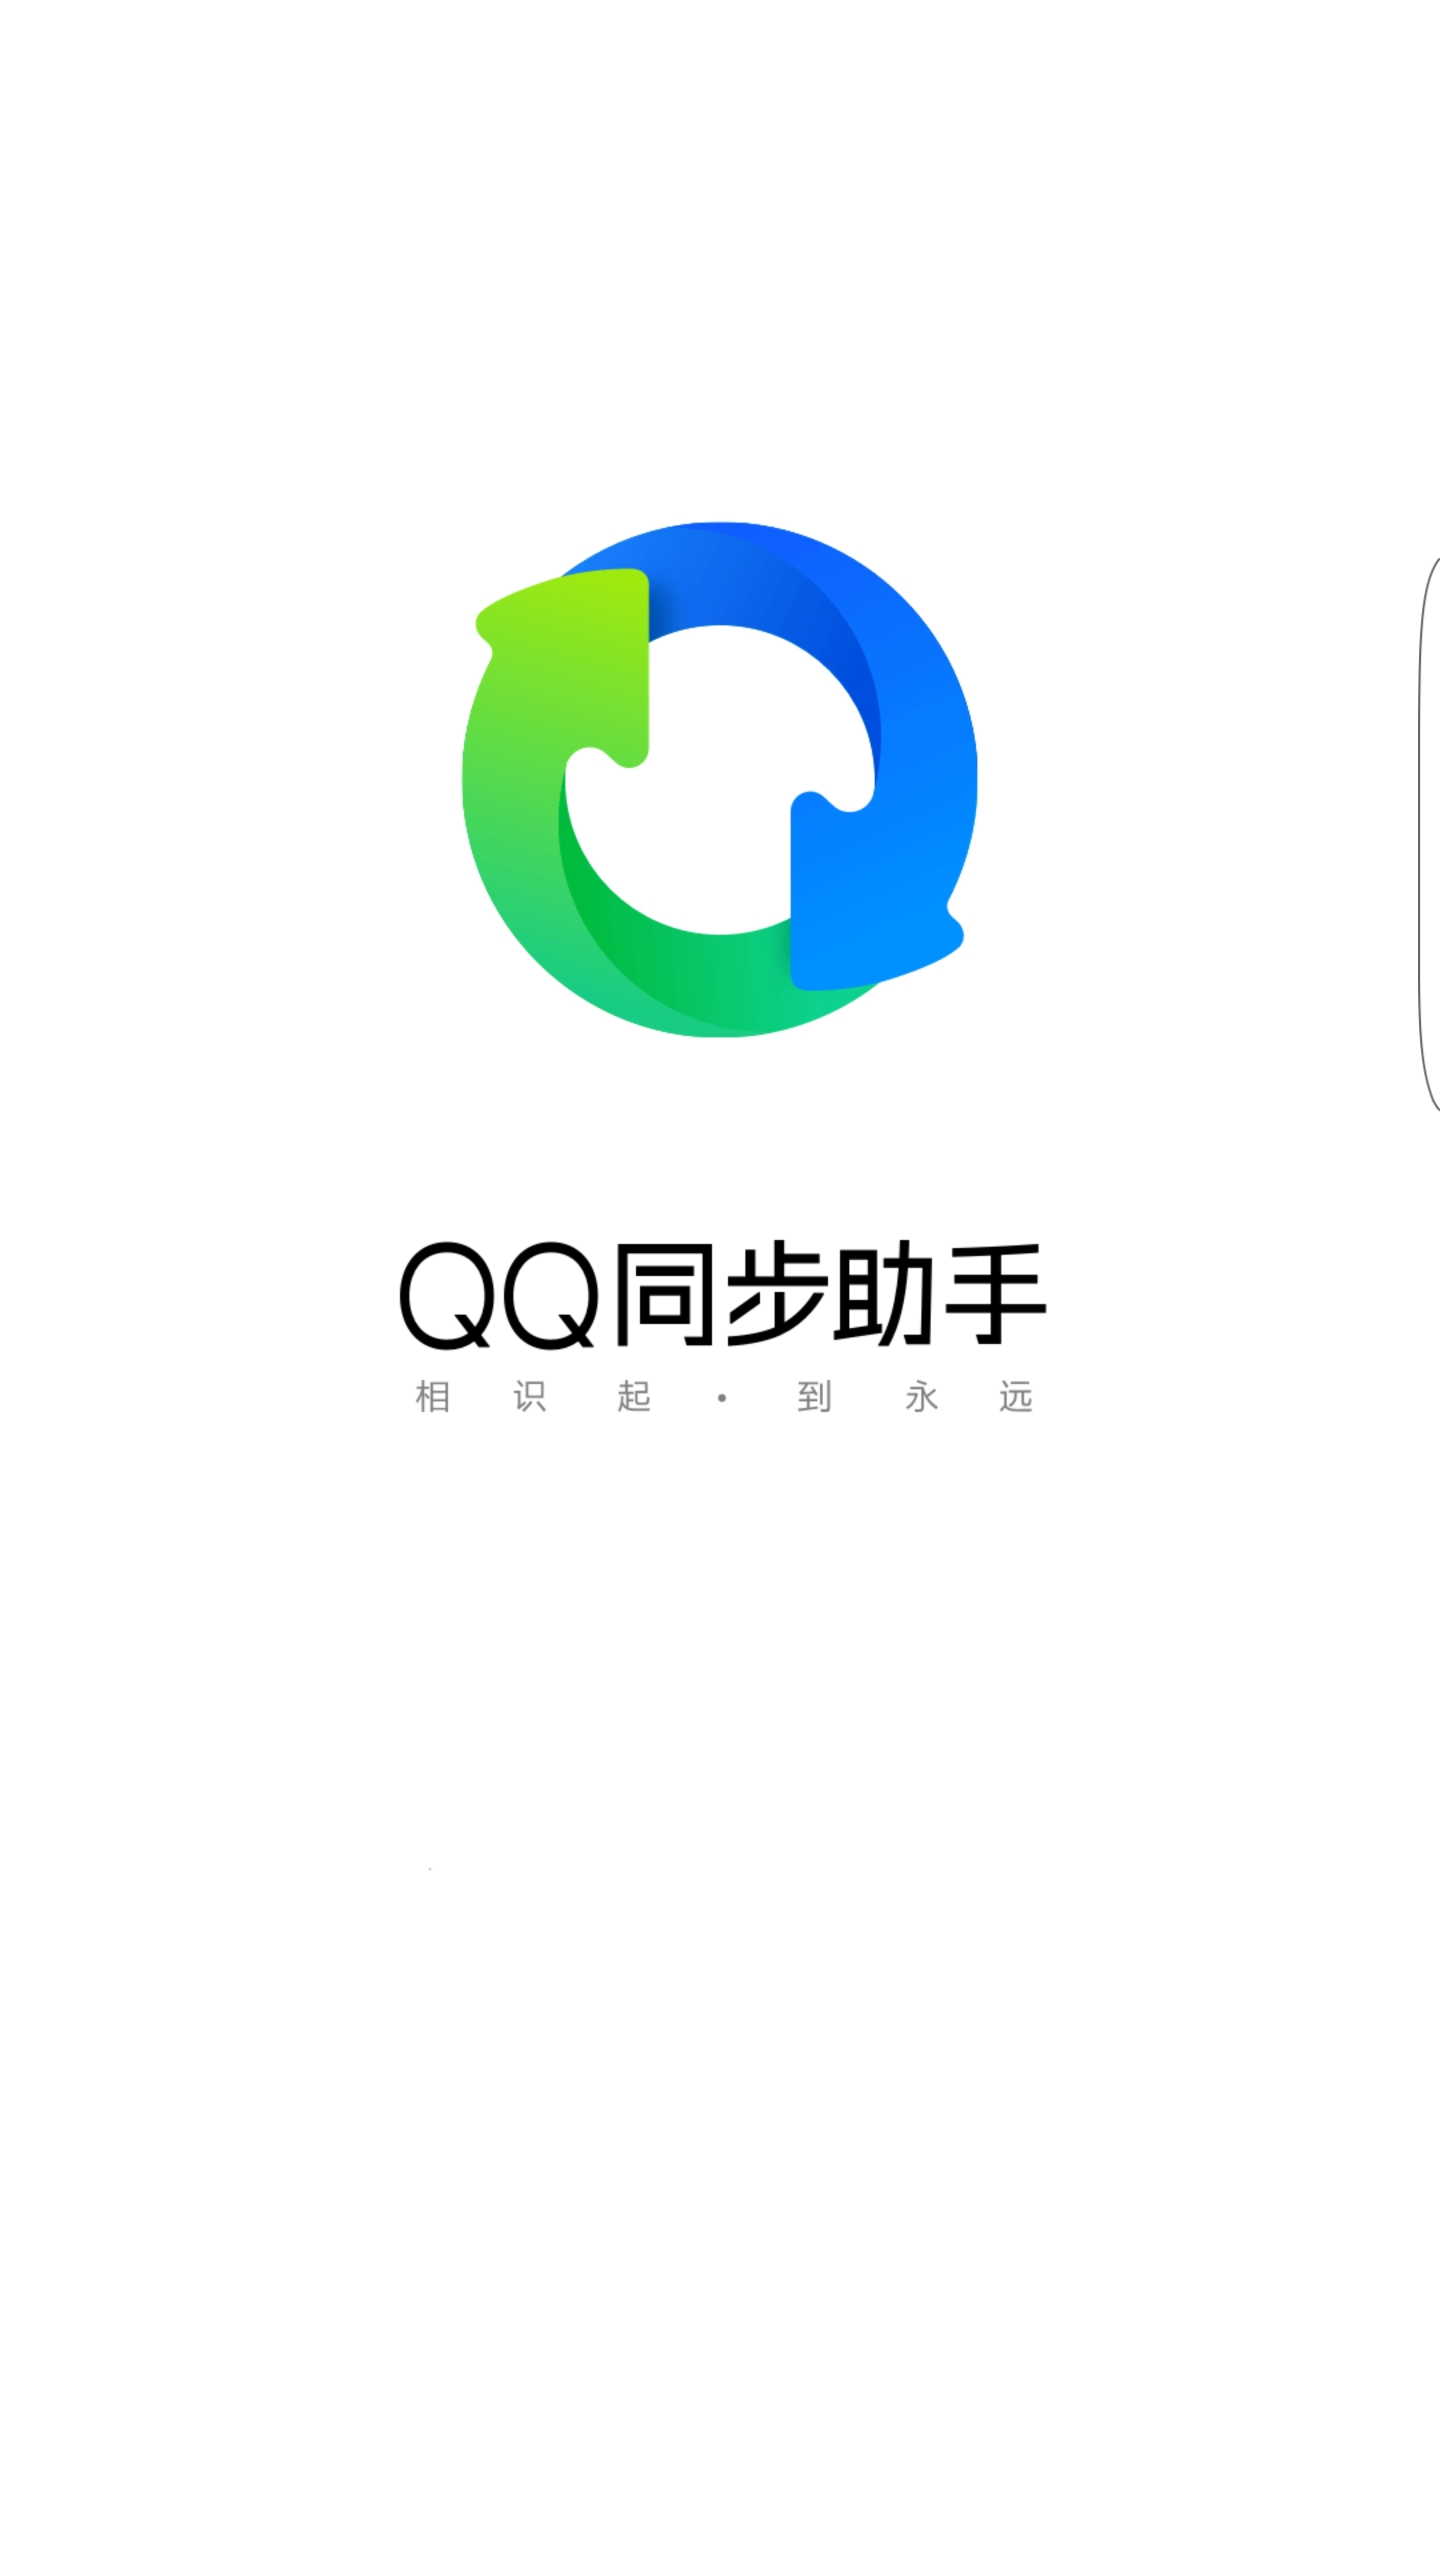 【软件】qq同步助手-拯救通讯录必备